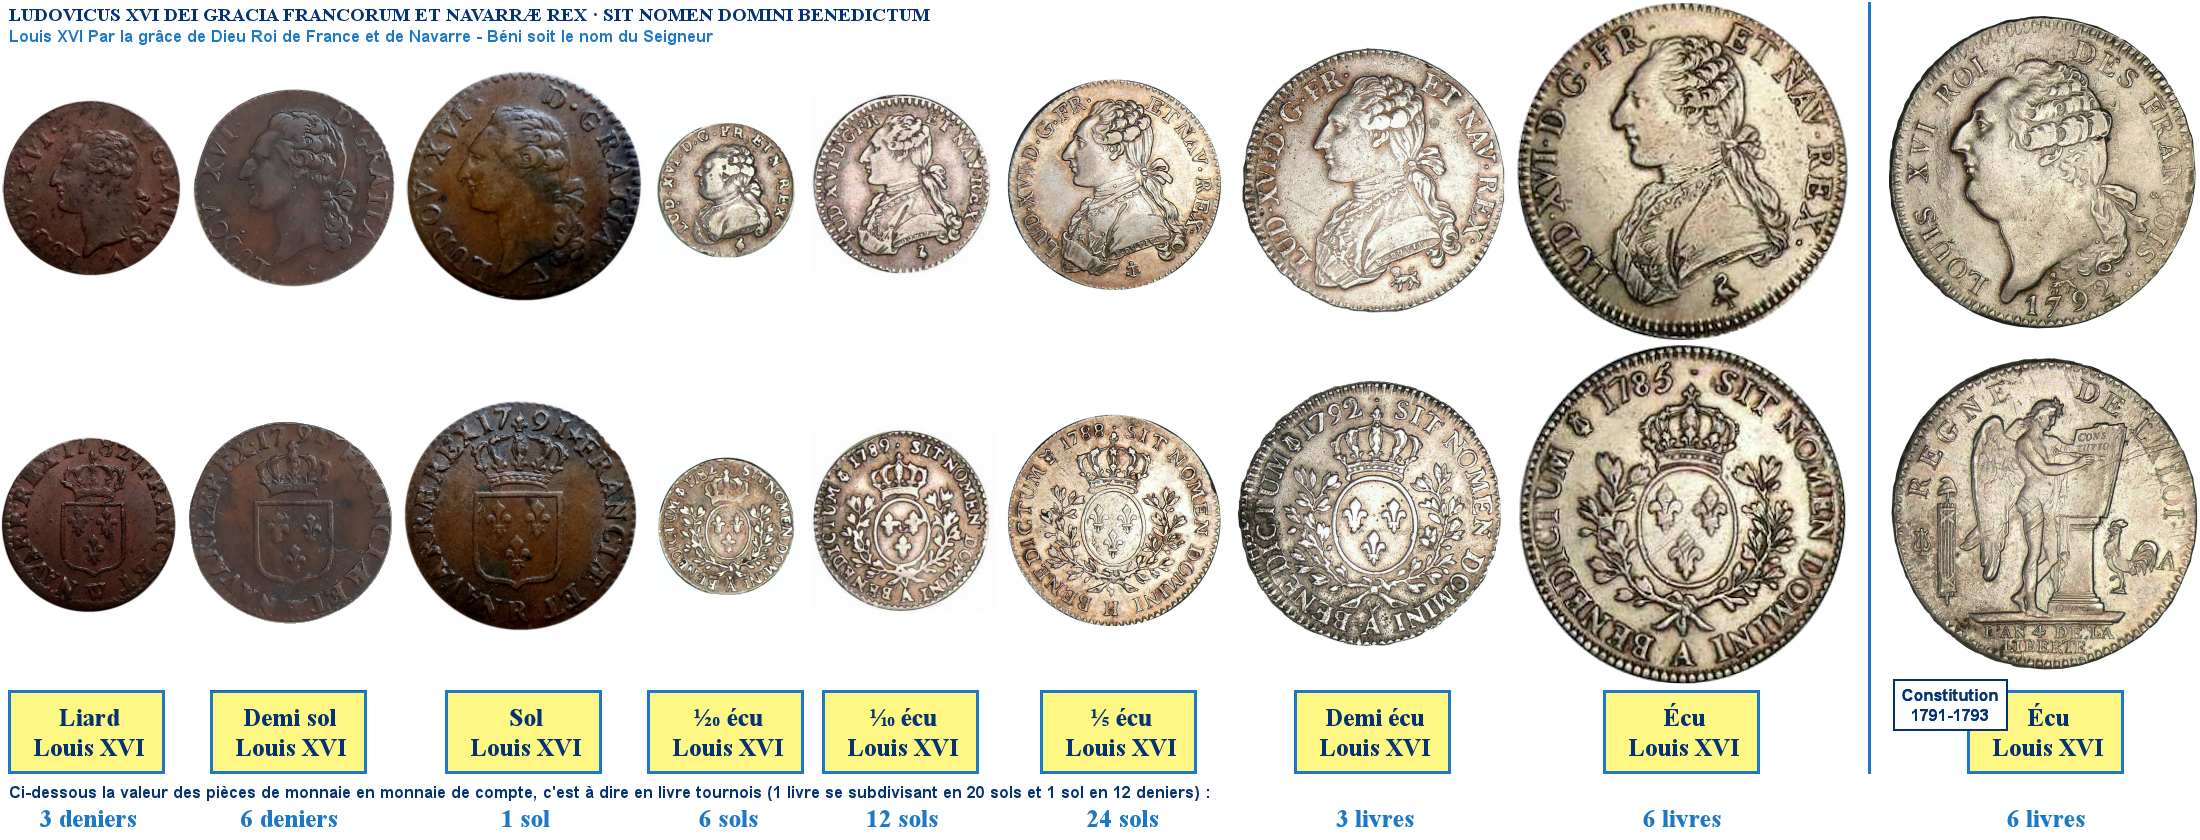 Photos de pièces de monnaies de Louis XVI